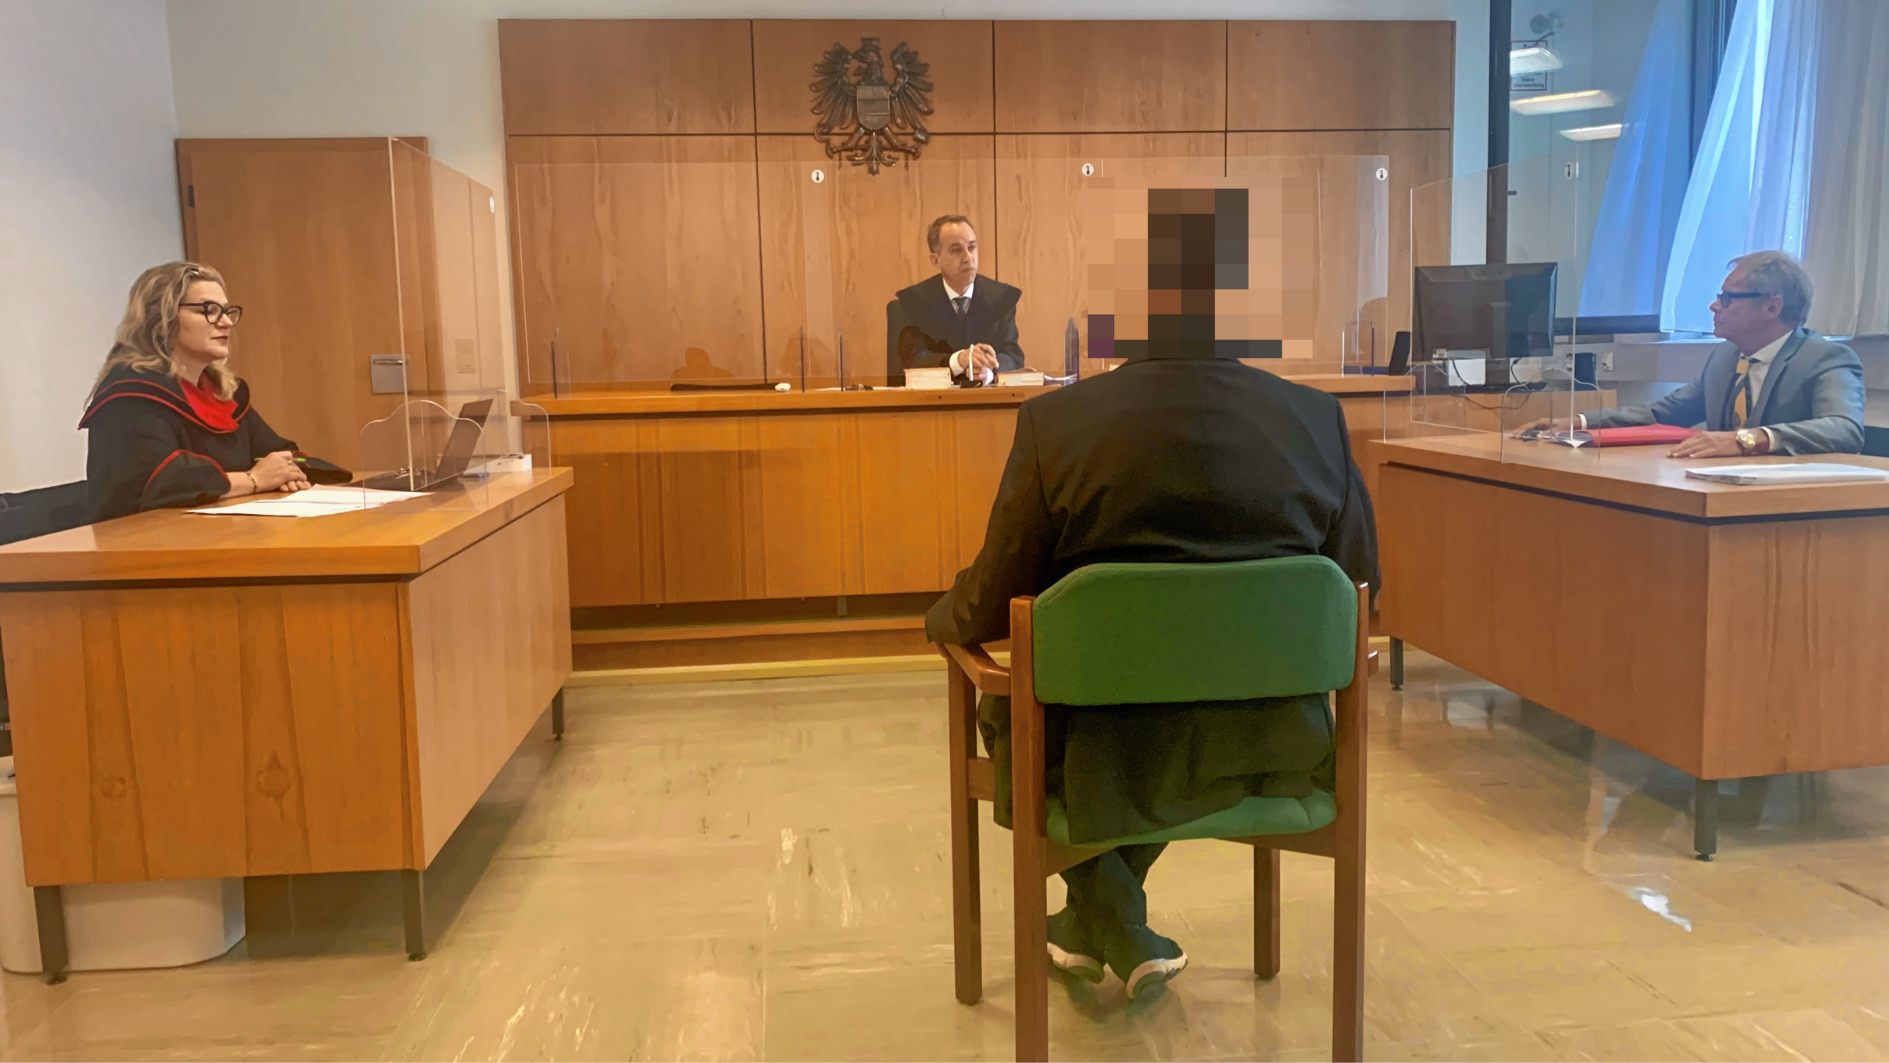 Bei einem Streit zuckte der 41-Jährige aus. Dafür saß er nun vor Gericht. (Bild: Wassermann Kerstin)